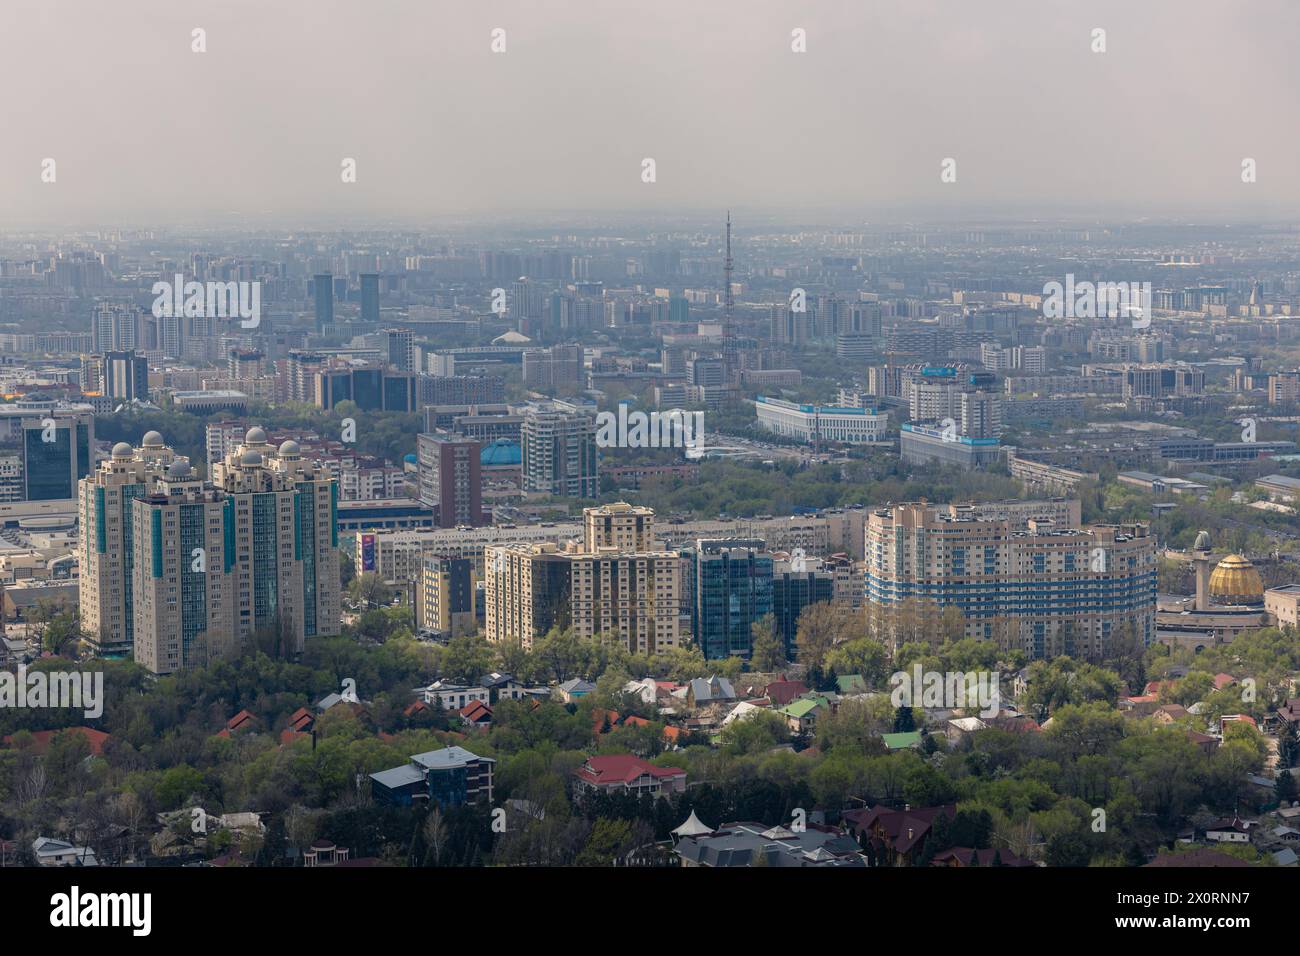 République du Kazakhstan, Asie centrale. Architecture urbaine, espace urbain. Vue panoramique sur Almaty depuis le parc du mont Kok Tobe. Paysage urbain au printemps. Haze Banque D'Images